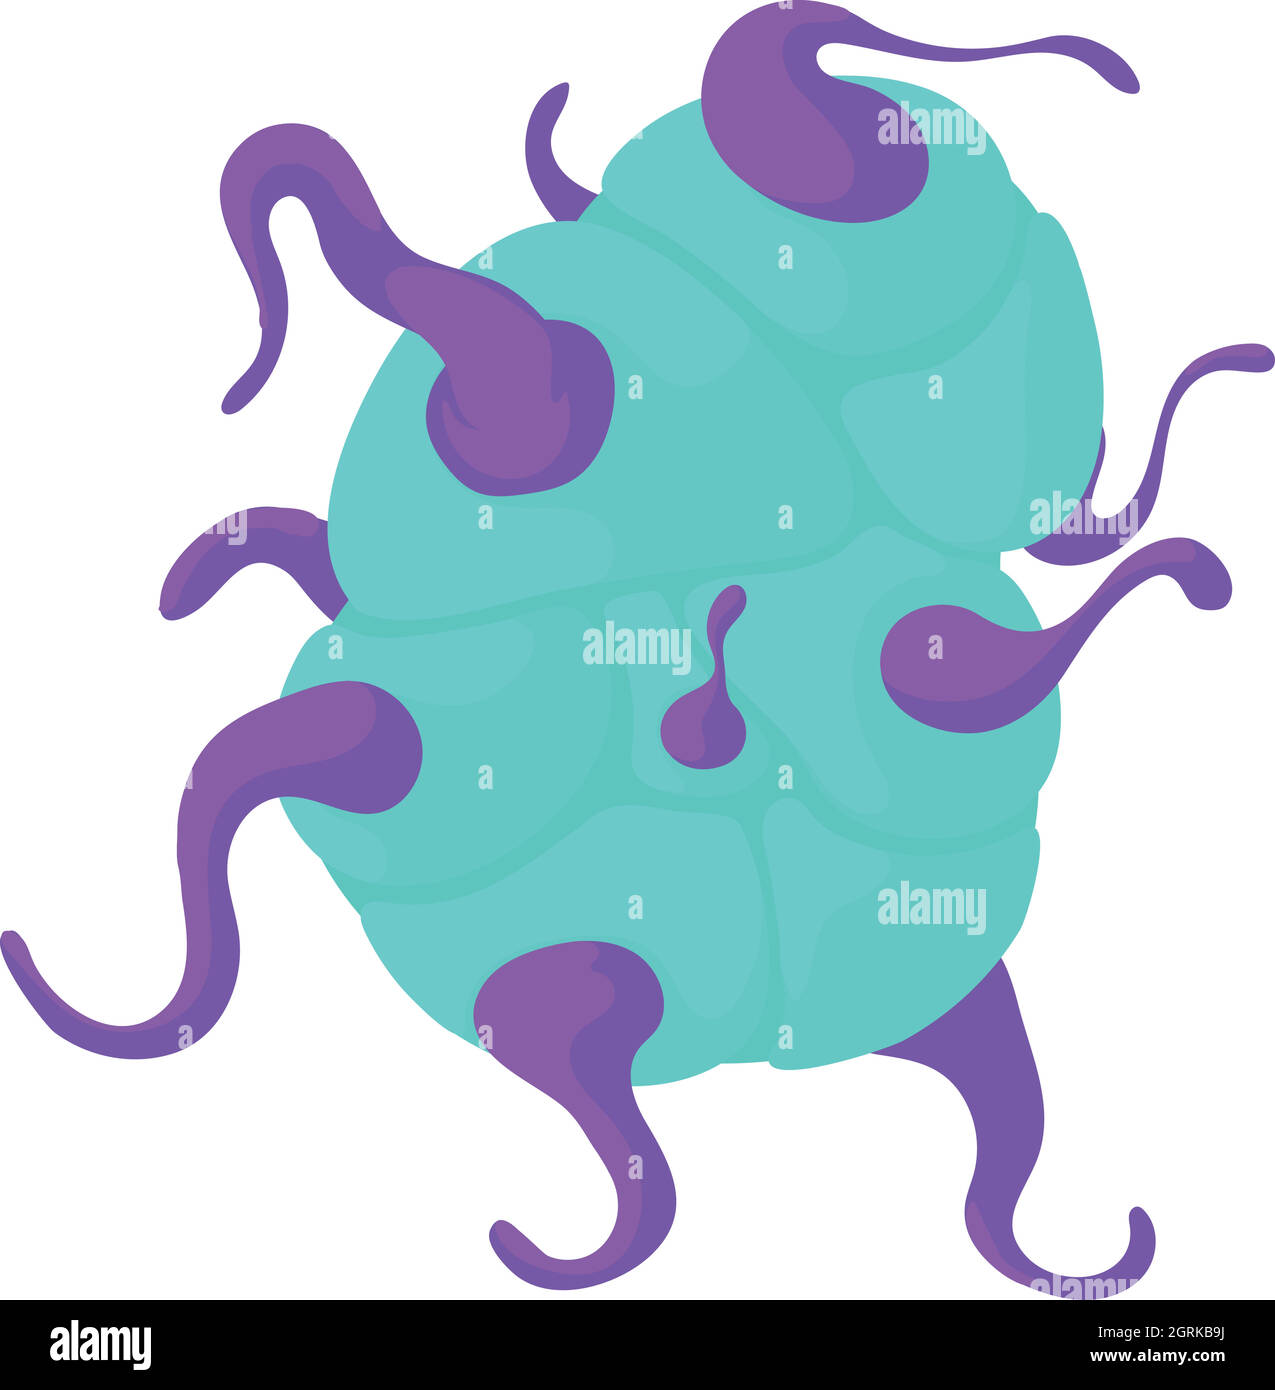 Les bactéries en spirale, l'icône de style cartoon Illustration de Vecteur